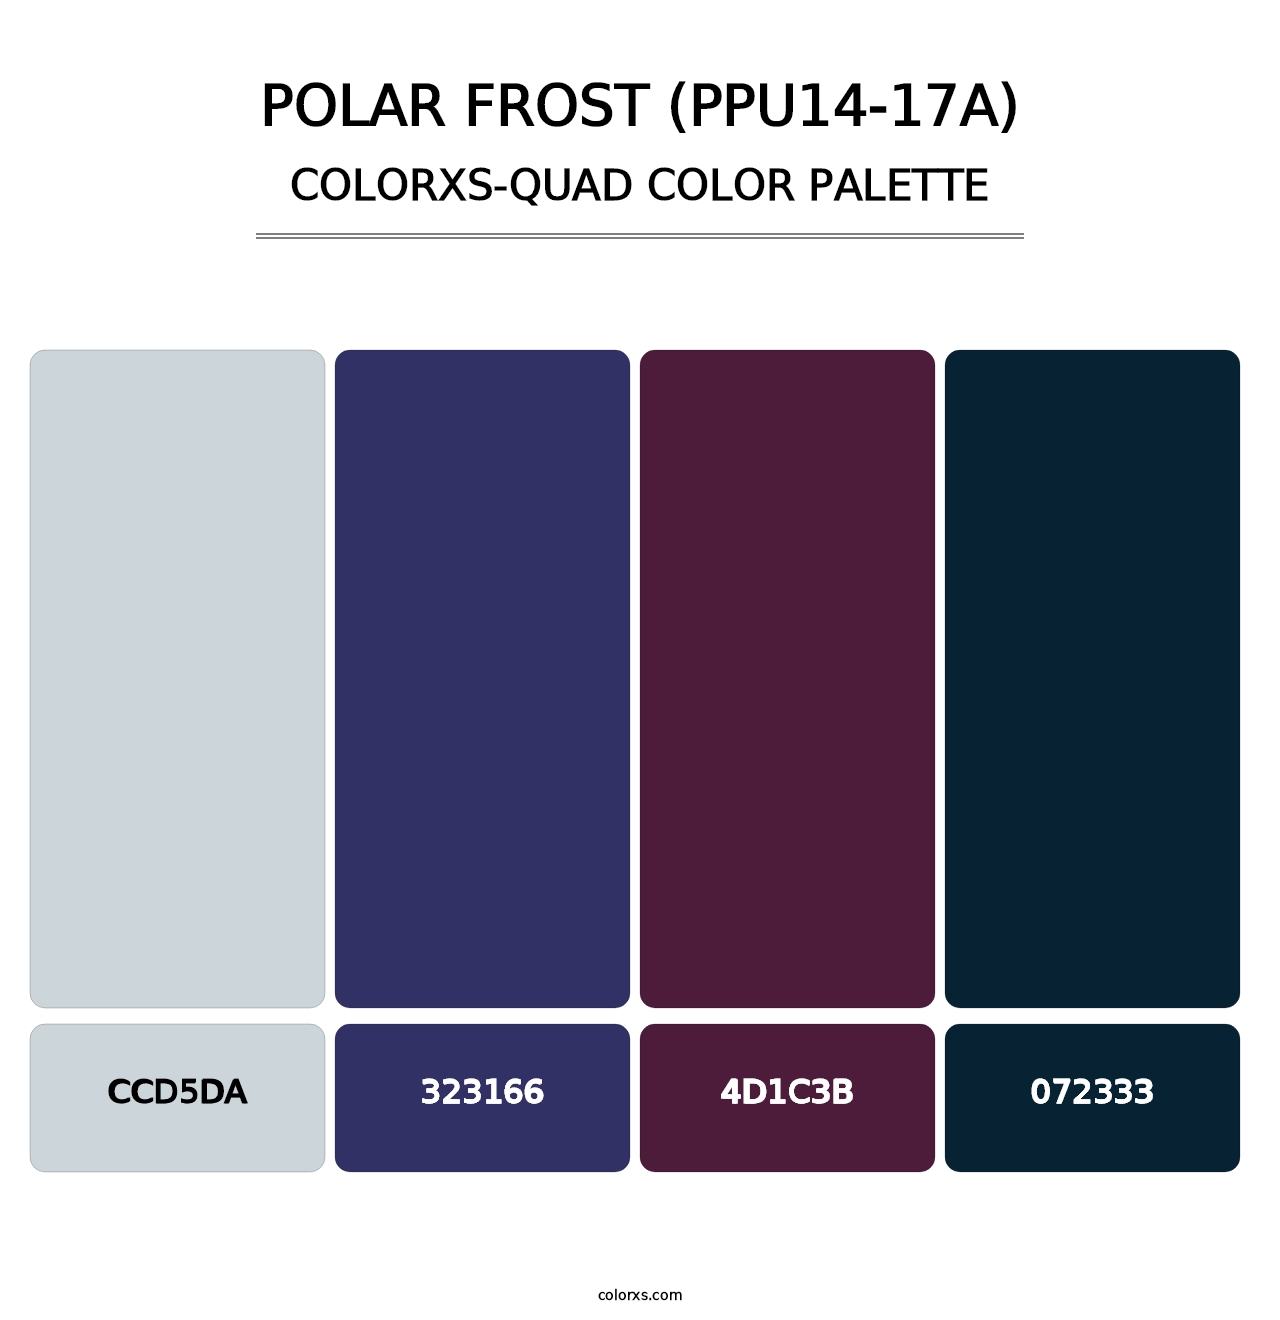 Polar Frost (PPU14-17A) - Colorxs Quad Palette